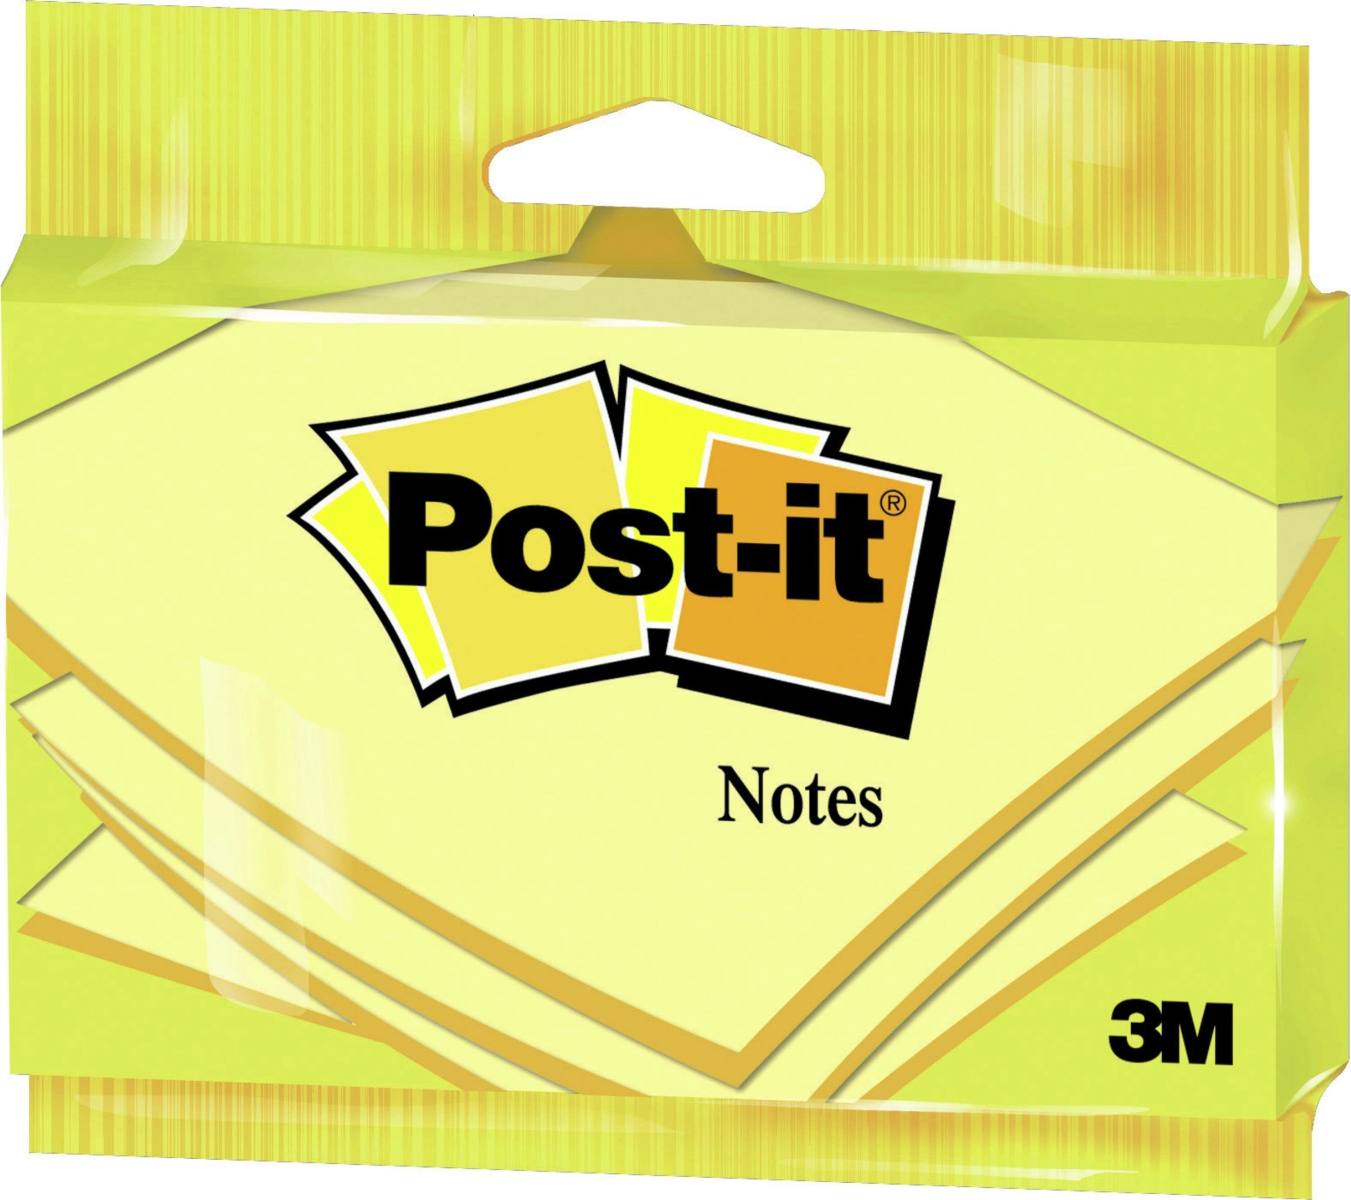 3M Post-it Notes 6830GB, 127 mm x 76 mm, geel, 1 pad van 100 vellen